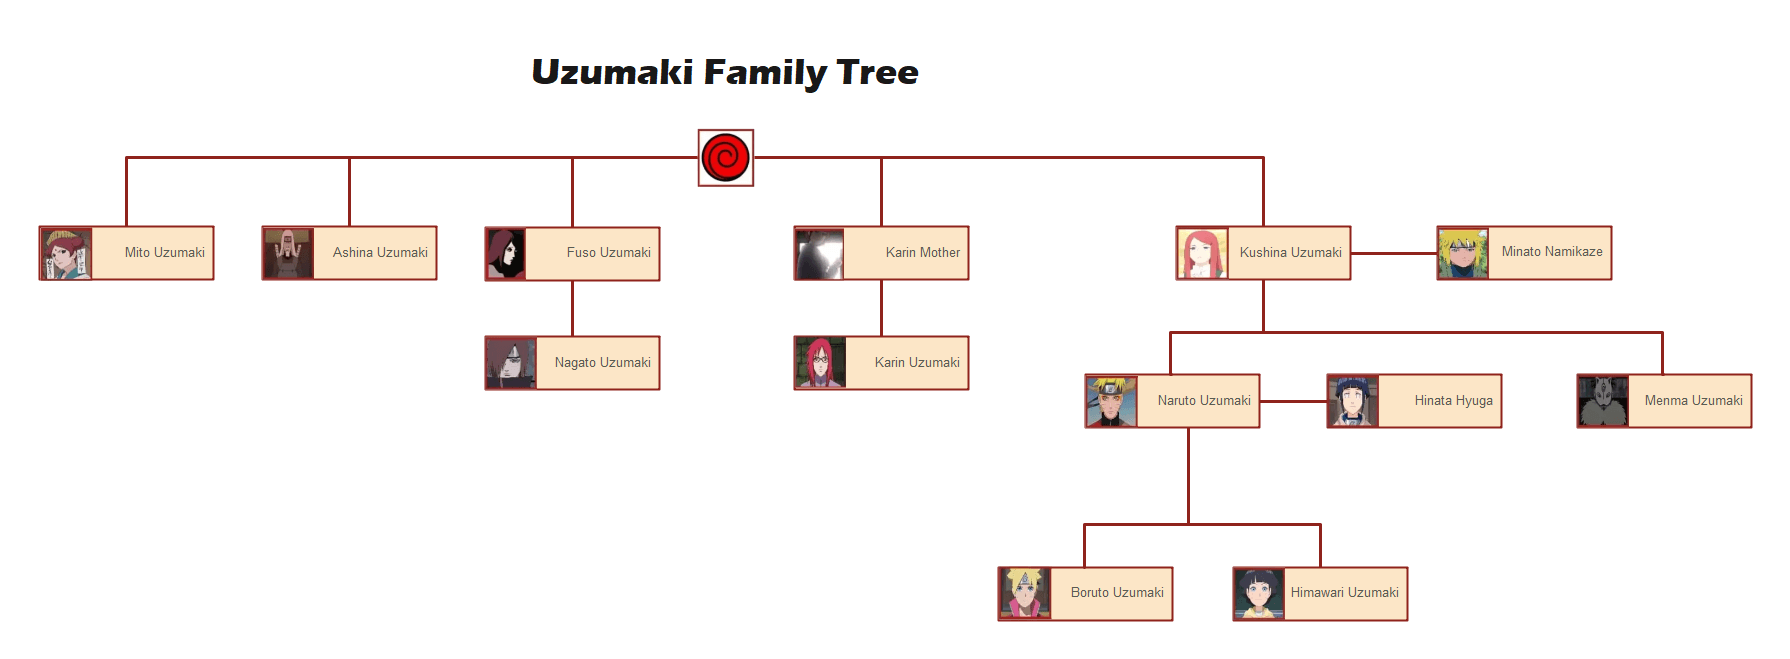 Uzumaki Family Tree